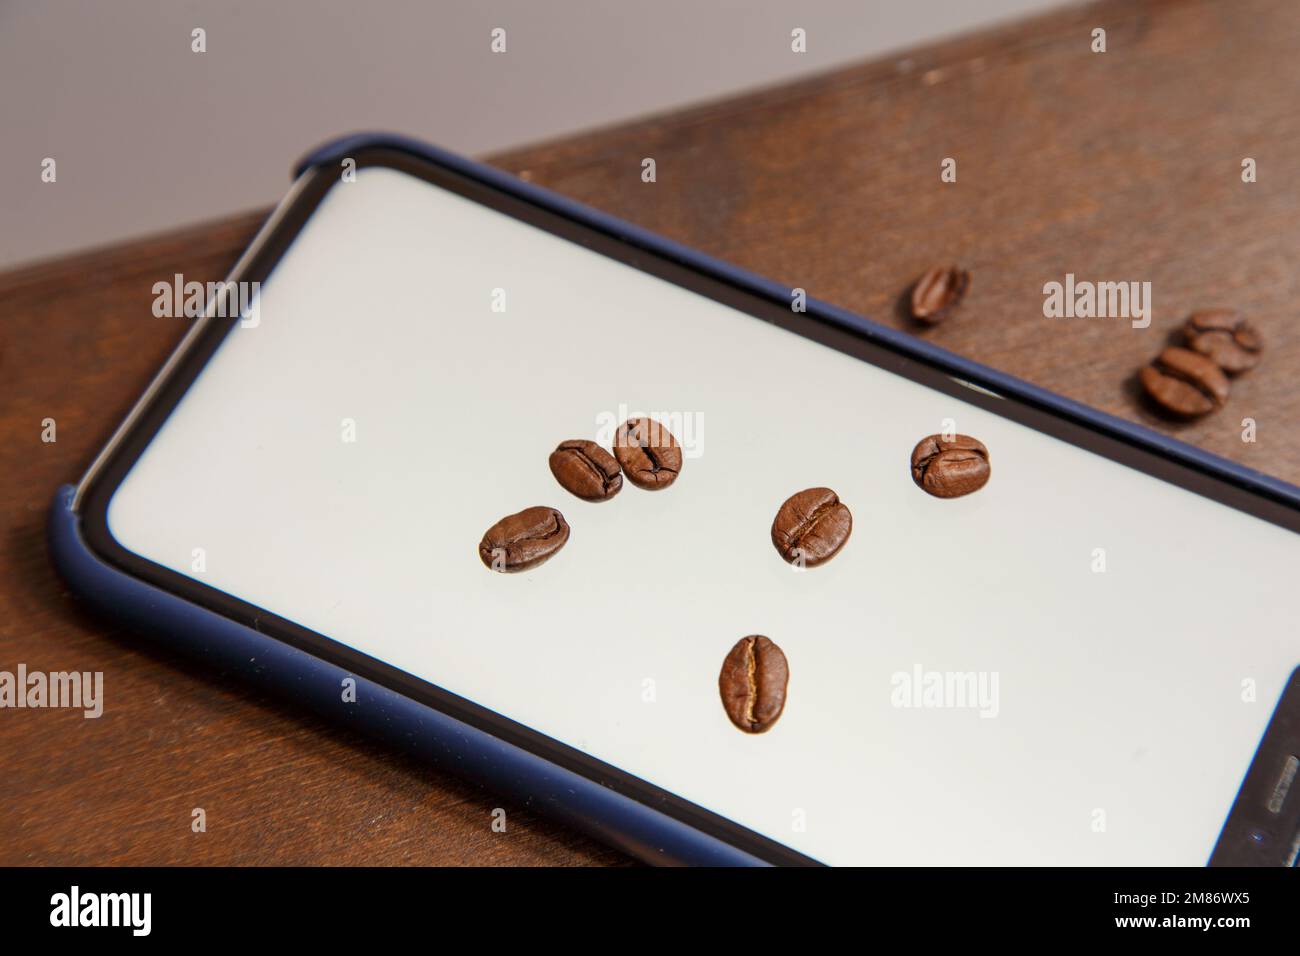 Le Turk se tient sur un ordinateur portable, les grains de café sont dispersés et un téléphone avec une couleur blanche à l'intérieur. Photo de haute qualité Banque D'Images